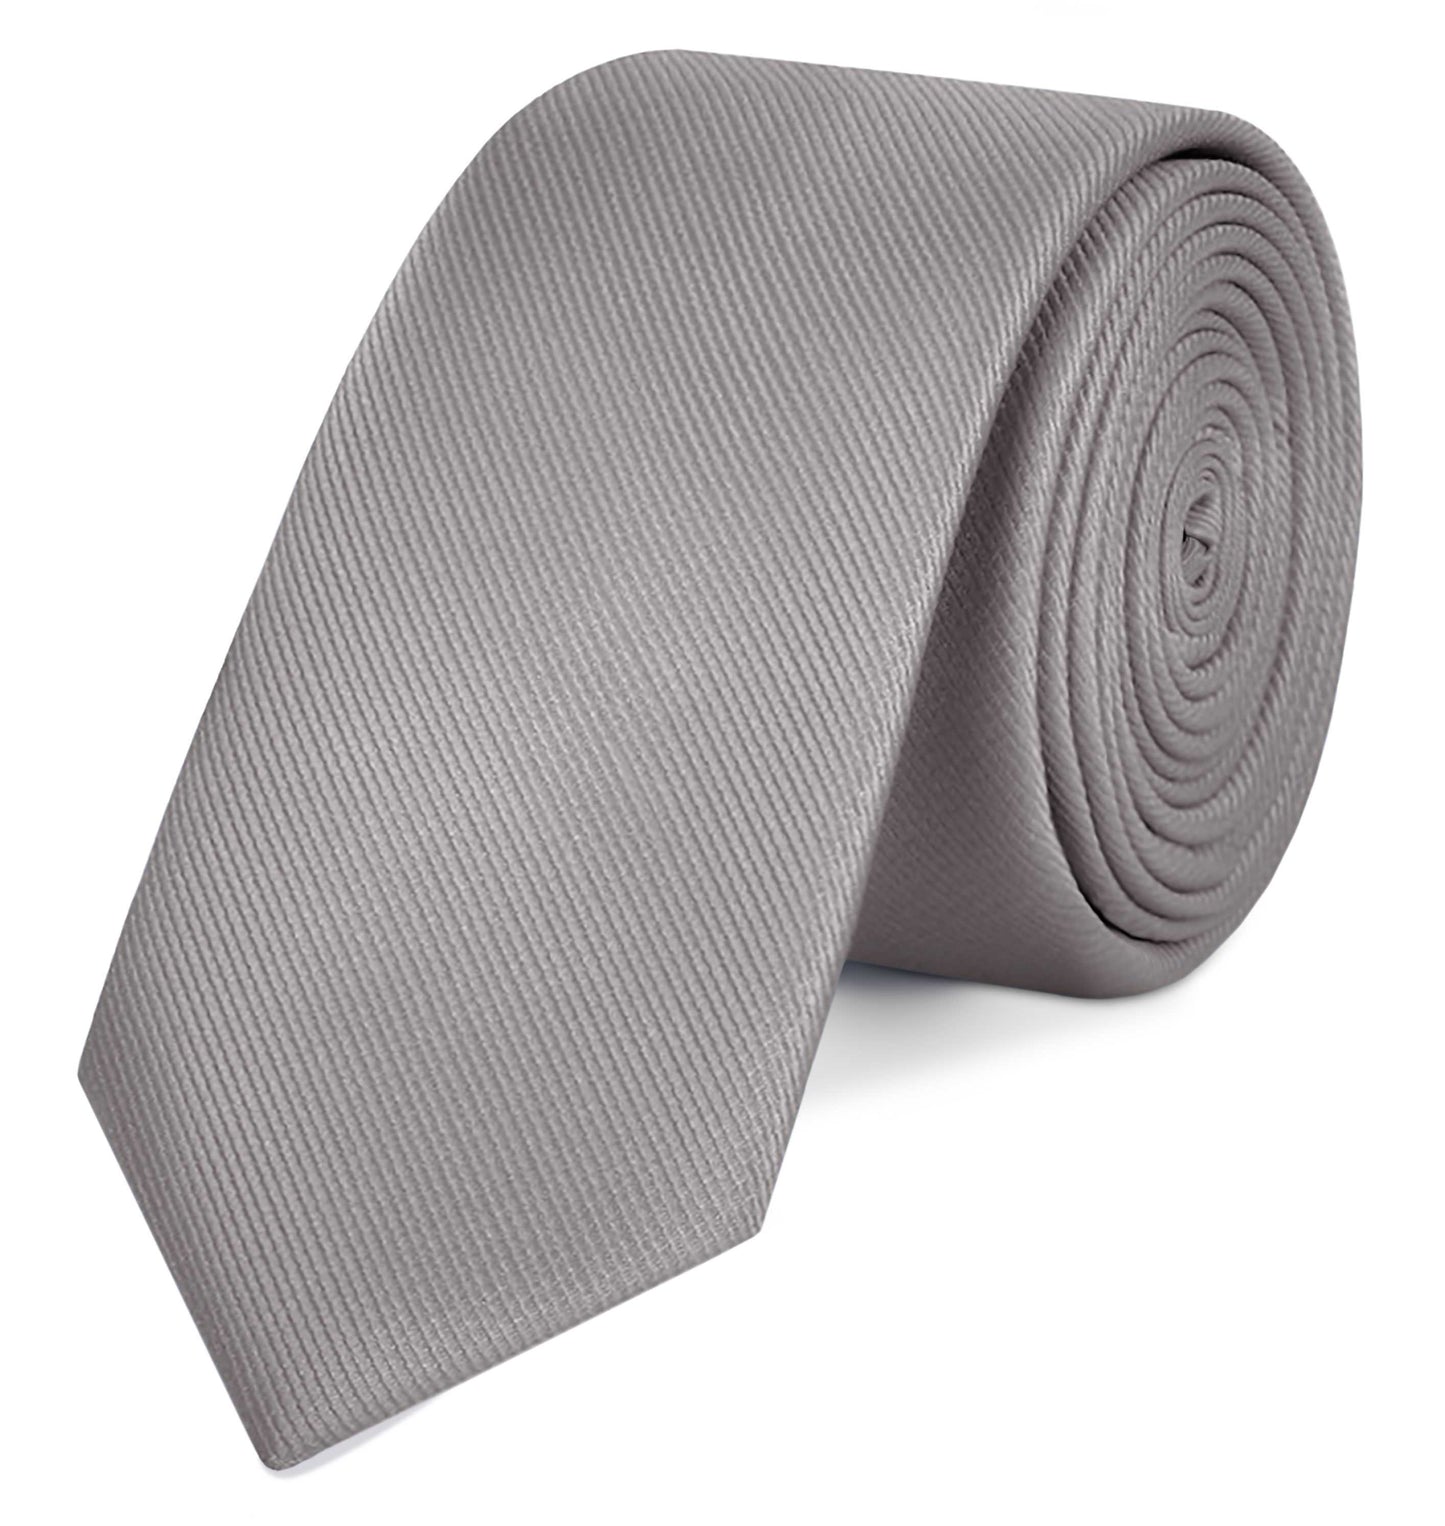 Corbata Gris claro Clásica Hecha a mano, Elegante para Celebraciones, Eventos, Bodas, Fiestas y Business, Corbata de Hombre